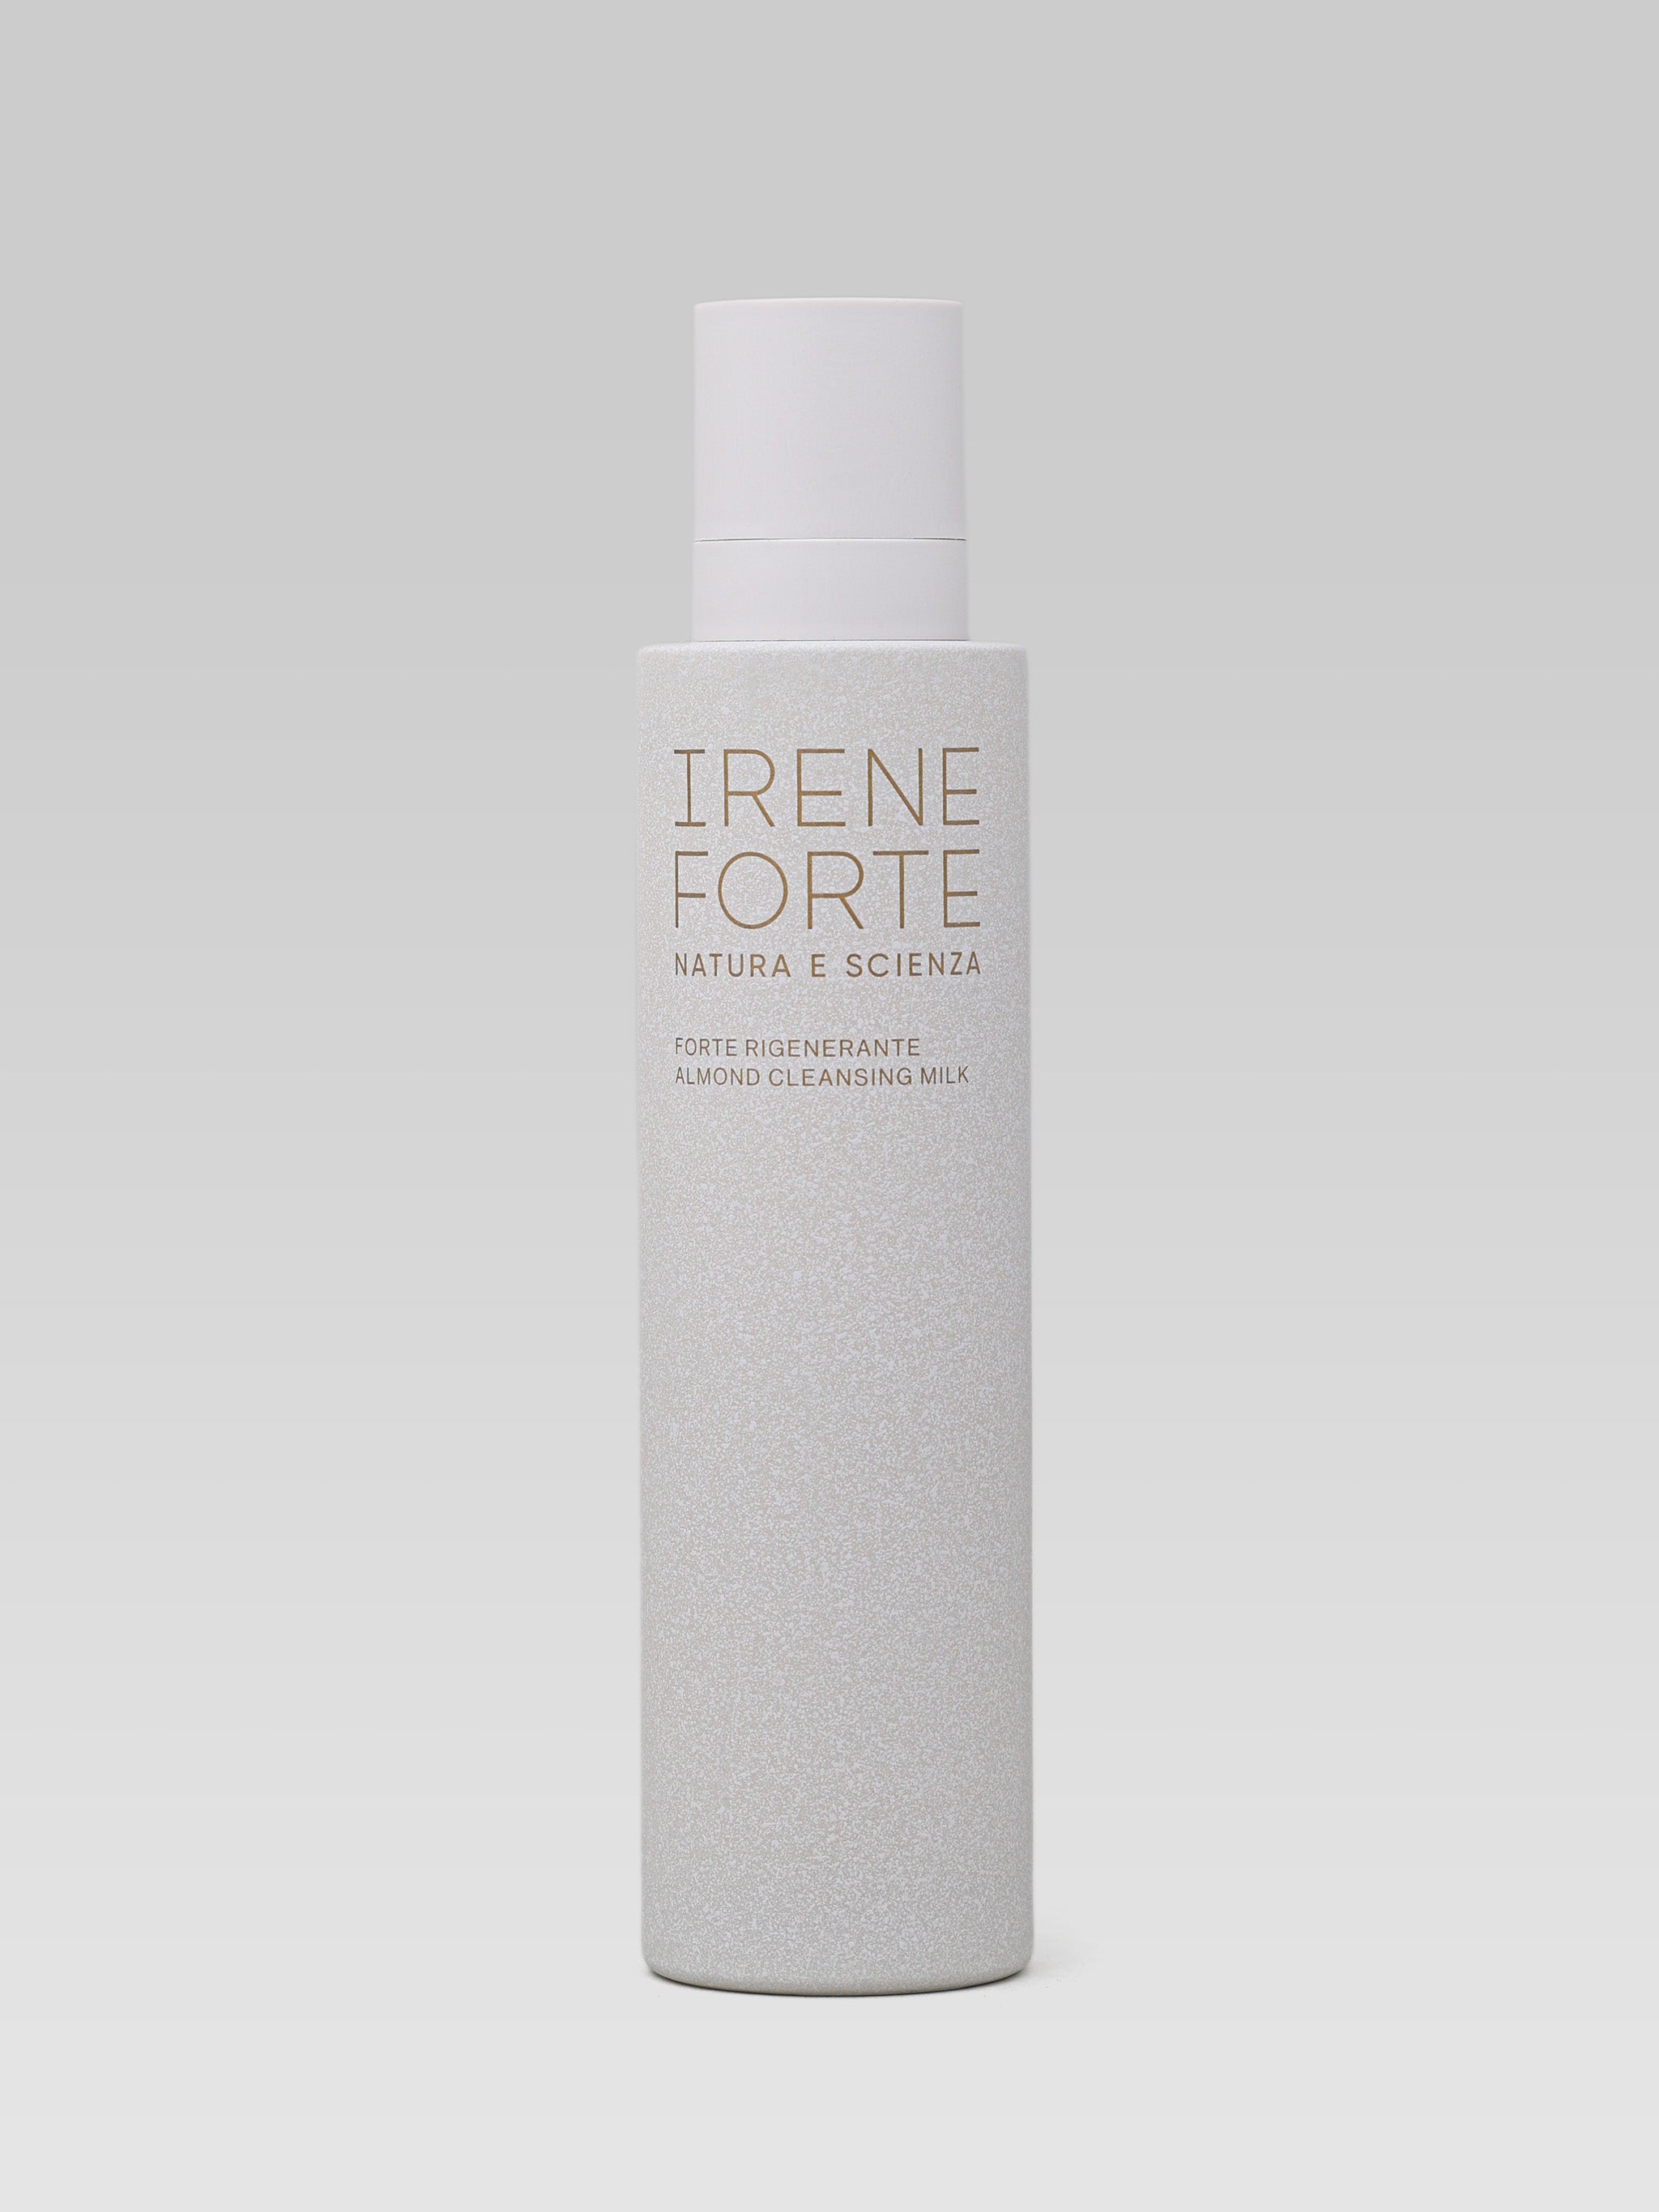 Irene Forte Almond Cleansing Milk product shot Reinigungsmilch